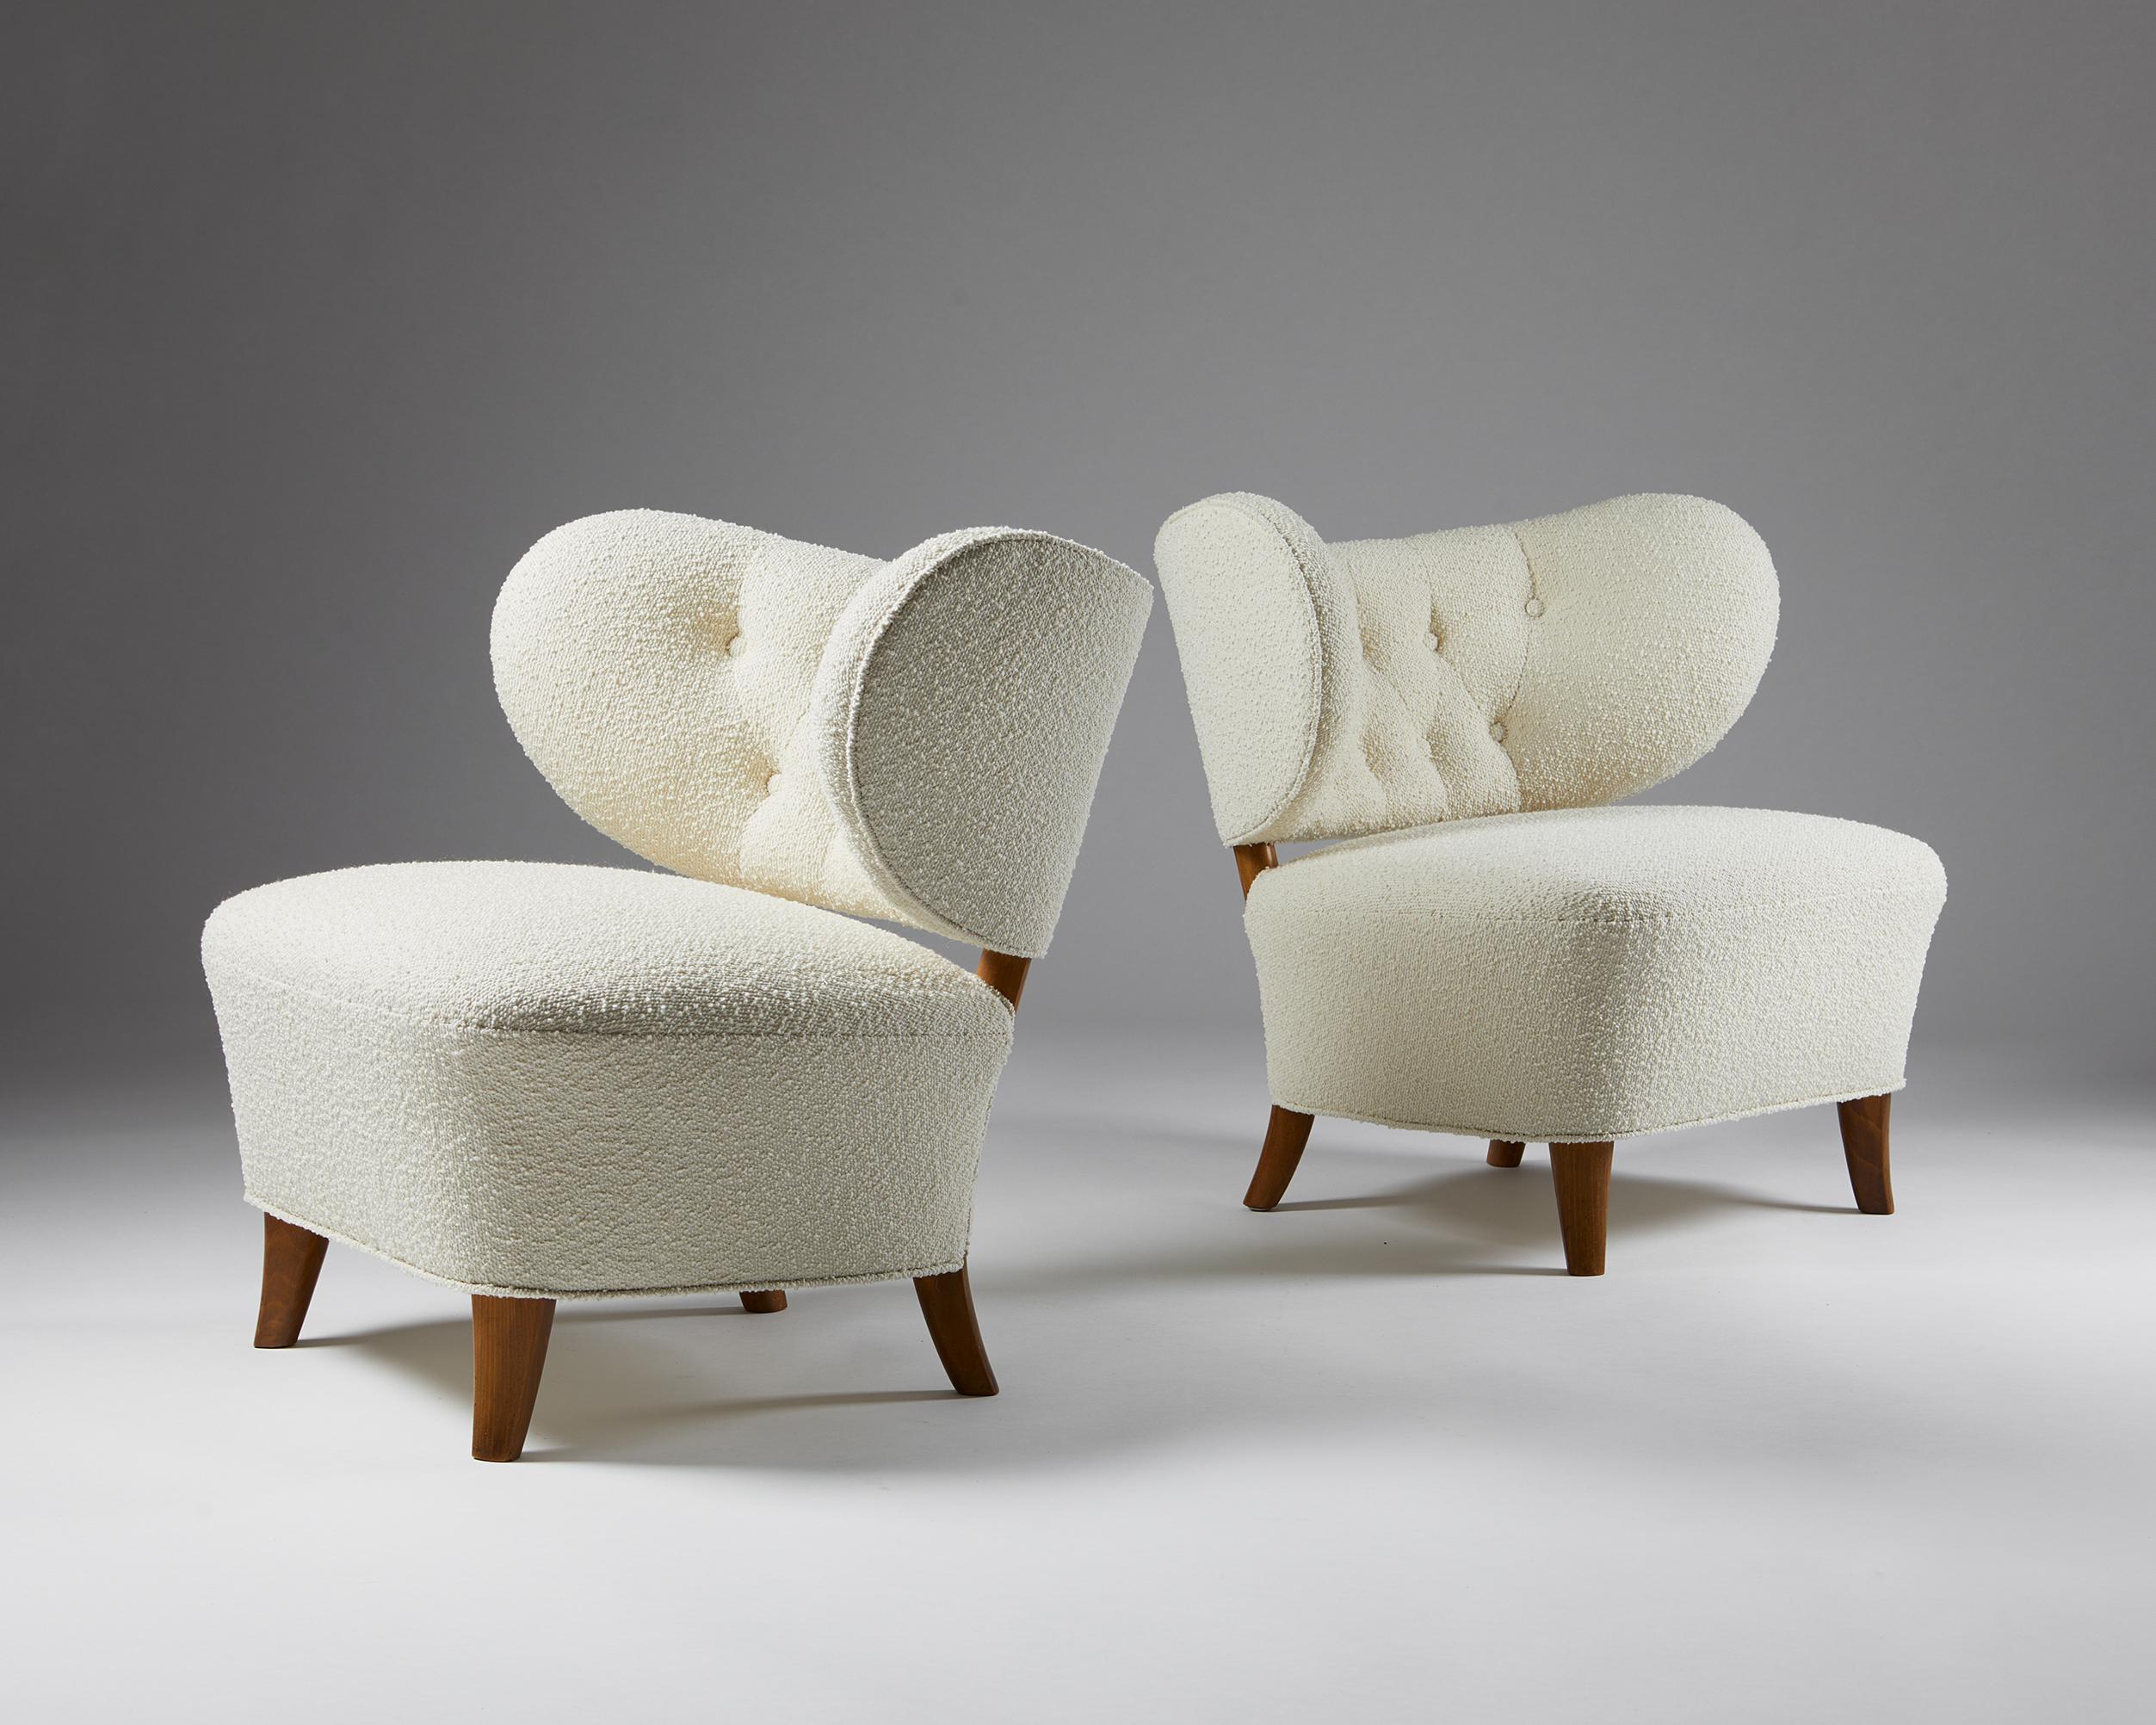 Ein Paar Sessel, entworfen von Otto Schulz für Boet,
Schweden, 1940er Jahre.

Polsterung aus Wolle und lackiertem Holz.


Dieses Schulz-Modell ist einer der seltensten und schönsten Stühle des Designers. Beide Stühle wurden von einem der besten